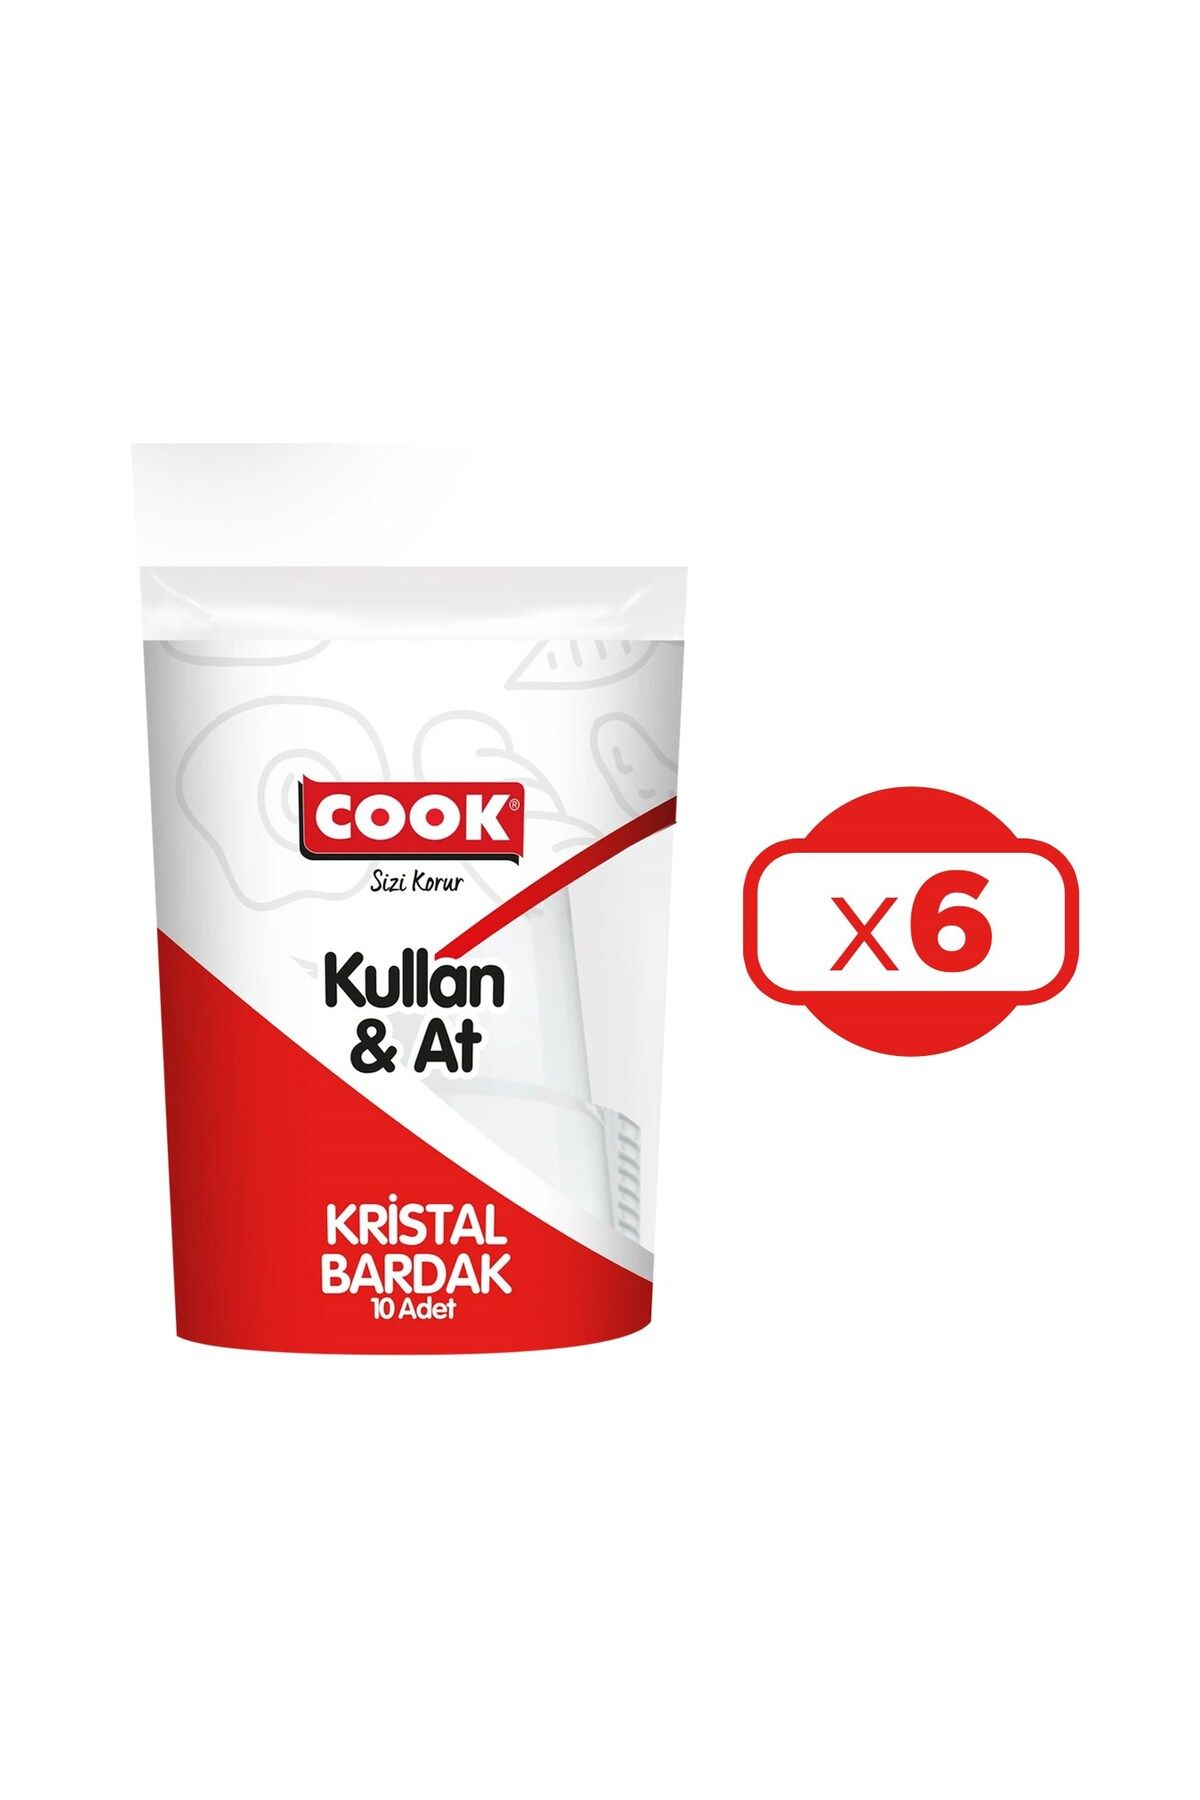 COOK Kristal Bardak Kullan&At 10 lu x 6 Paket (60 Adet)